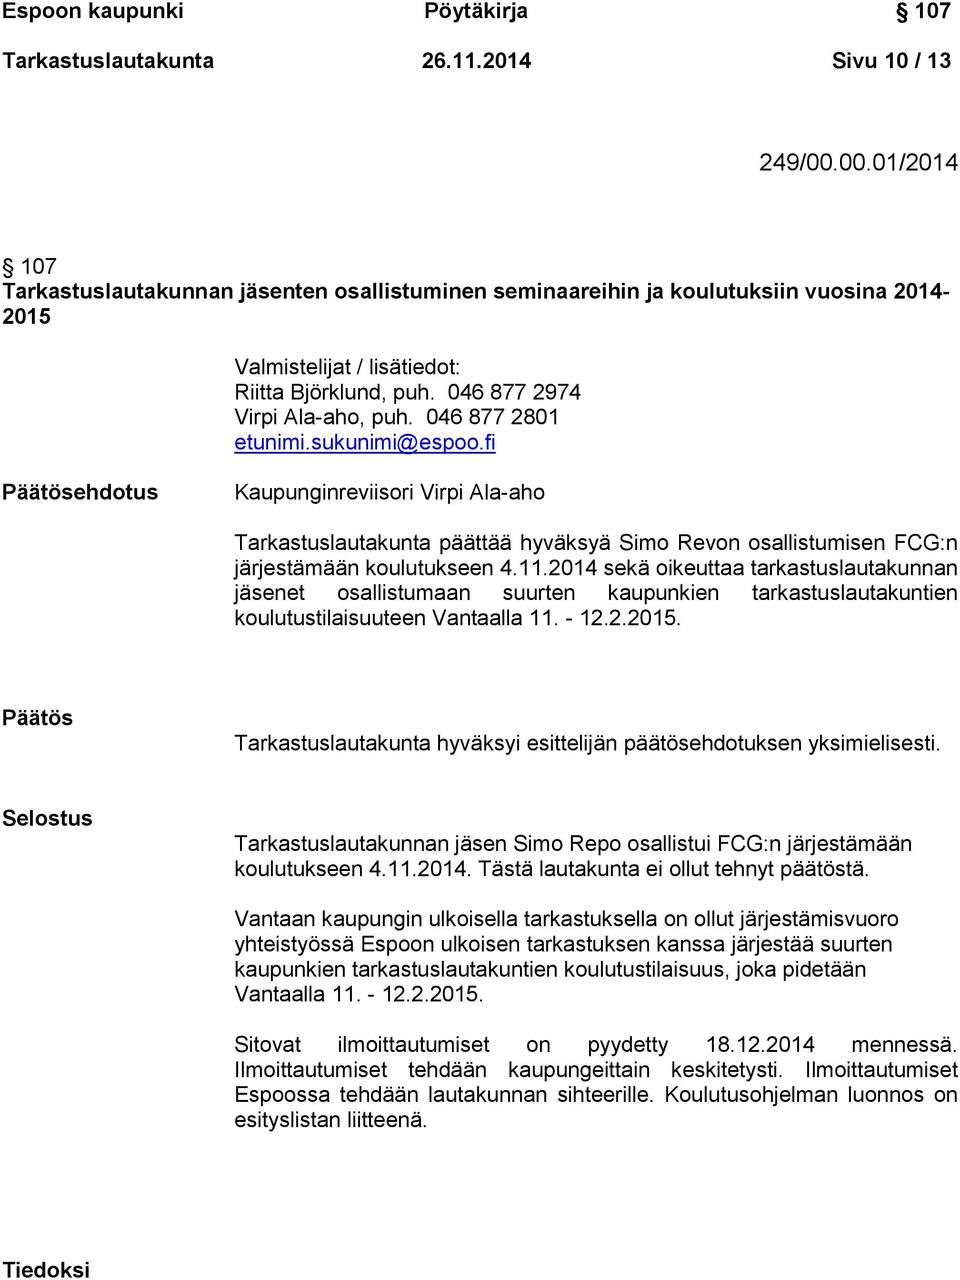 046 877 2801 etunimi.sukunimi@espoo.fi ehdotus Kaupunginreviisori Virpi Ala-aho Tarkastuslautakunta päättää hyväksyä Simo Revon osallistumisen FCG:n järjestämään koulutukseen 4.11.